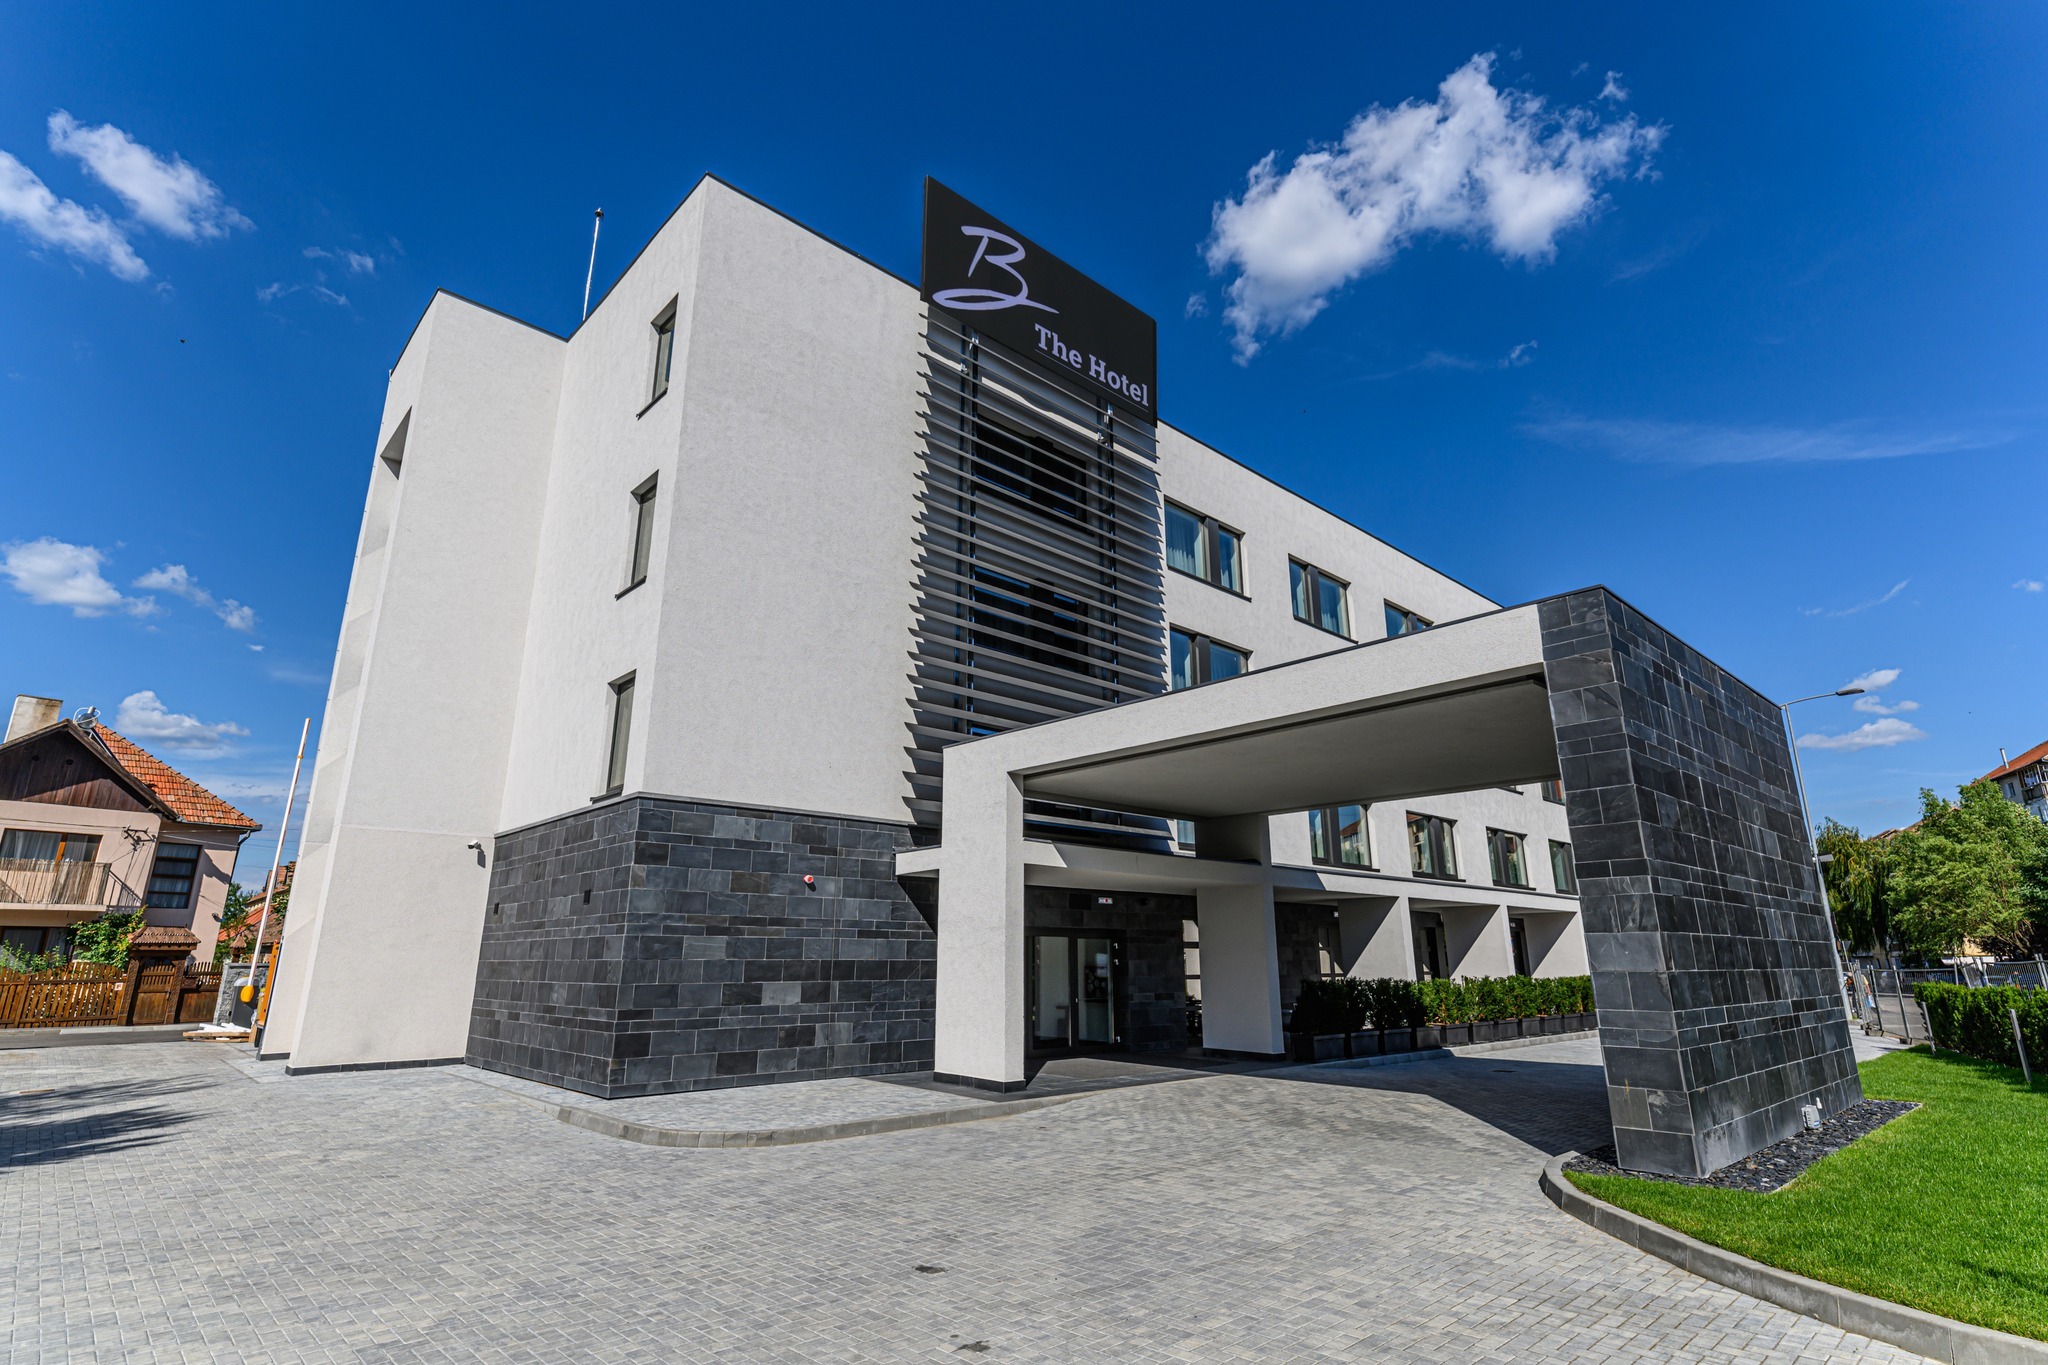 Fundaţia Pro Economica Alapítvány a inaugurat un hotel de patru stele în centrul oraşului Sfântu Gheorghe, investiţie de 5 milioane de euro